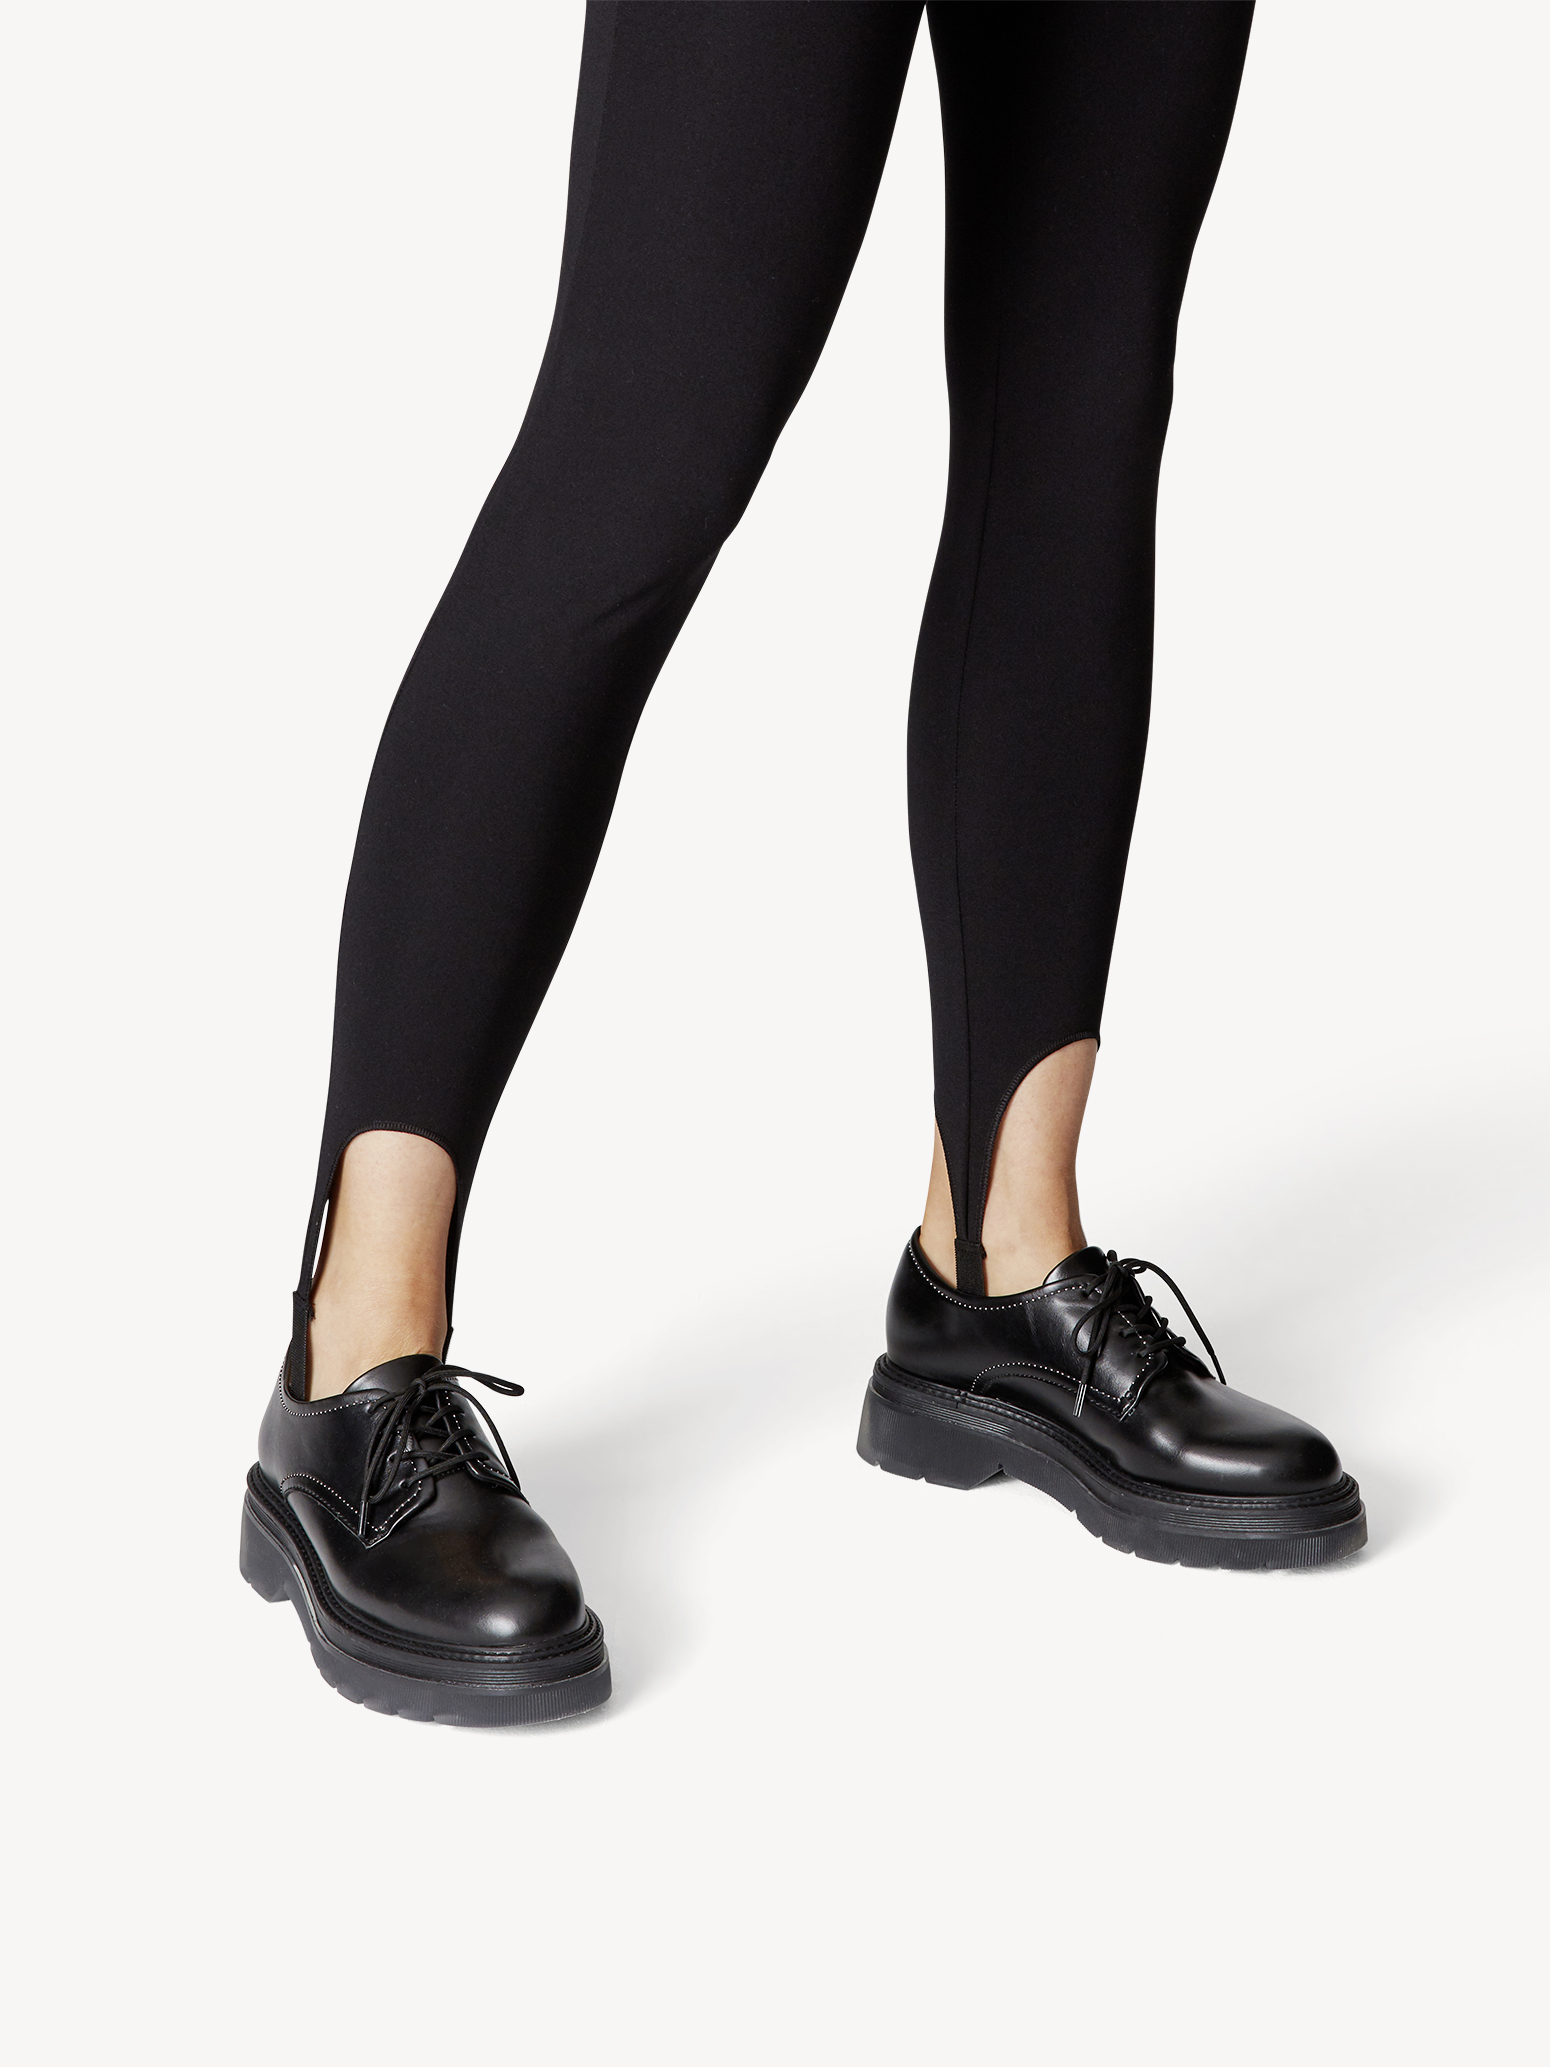 Ботинки на шнурках женские (черный) - изображение №1